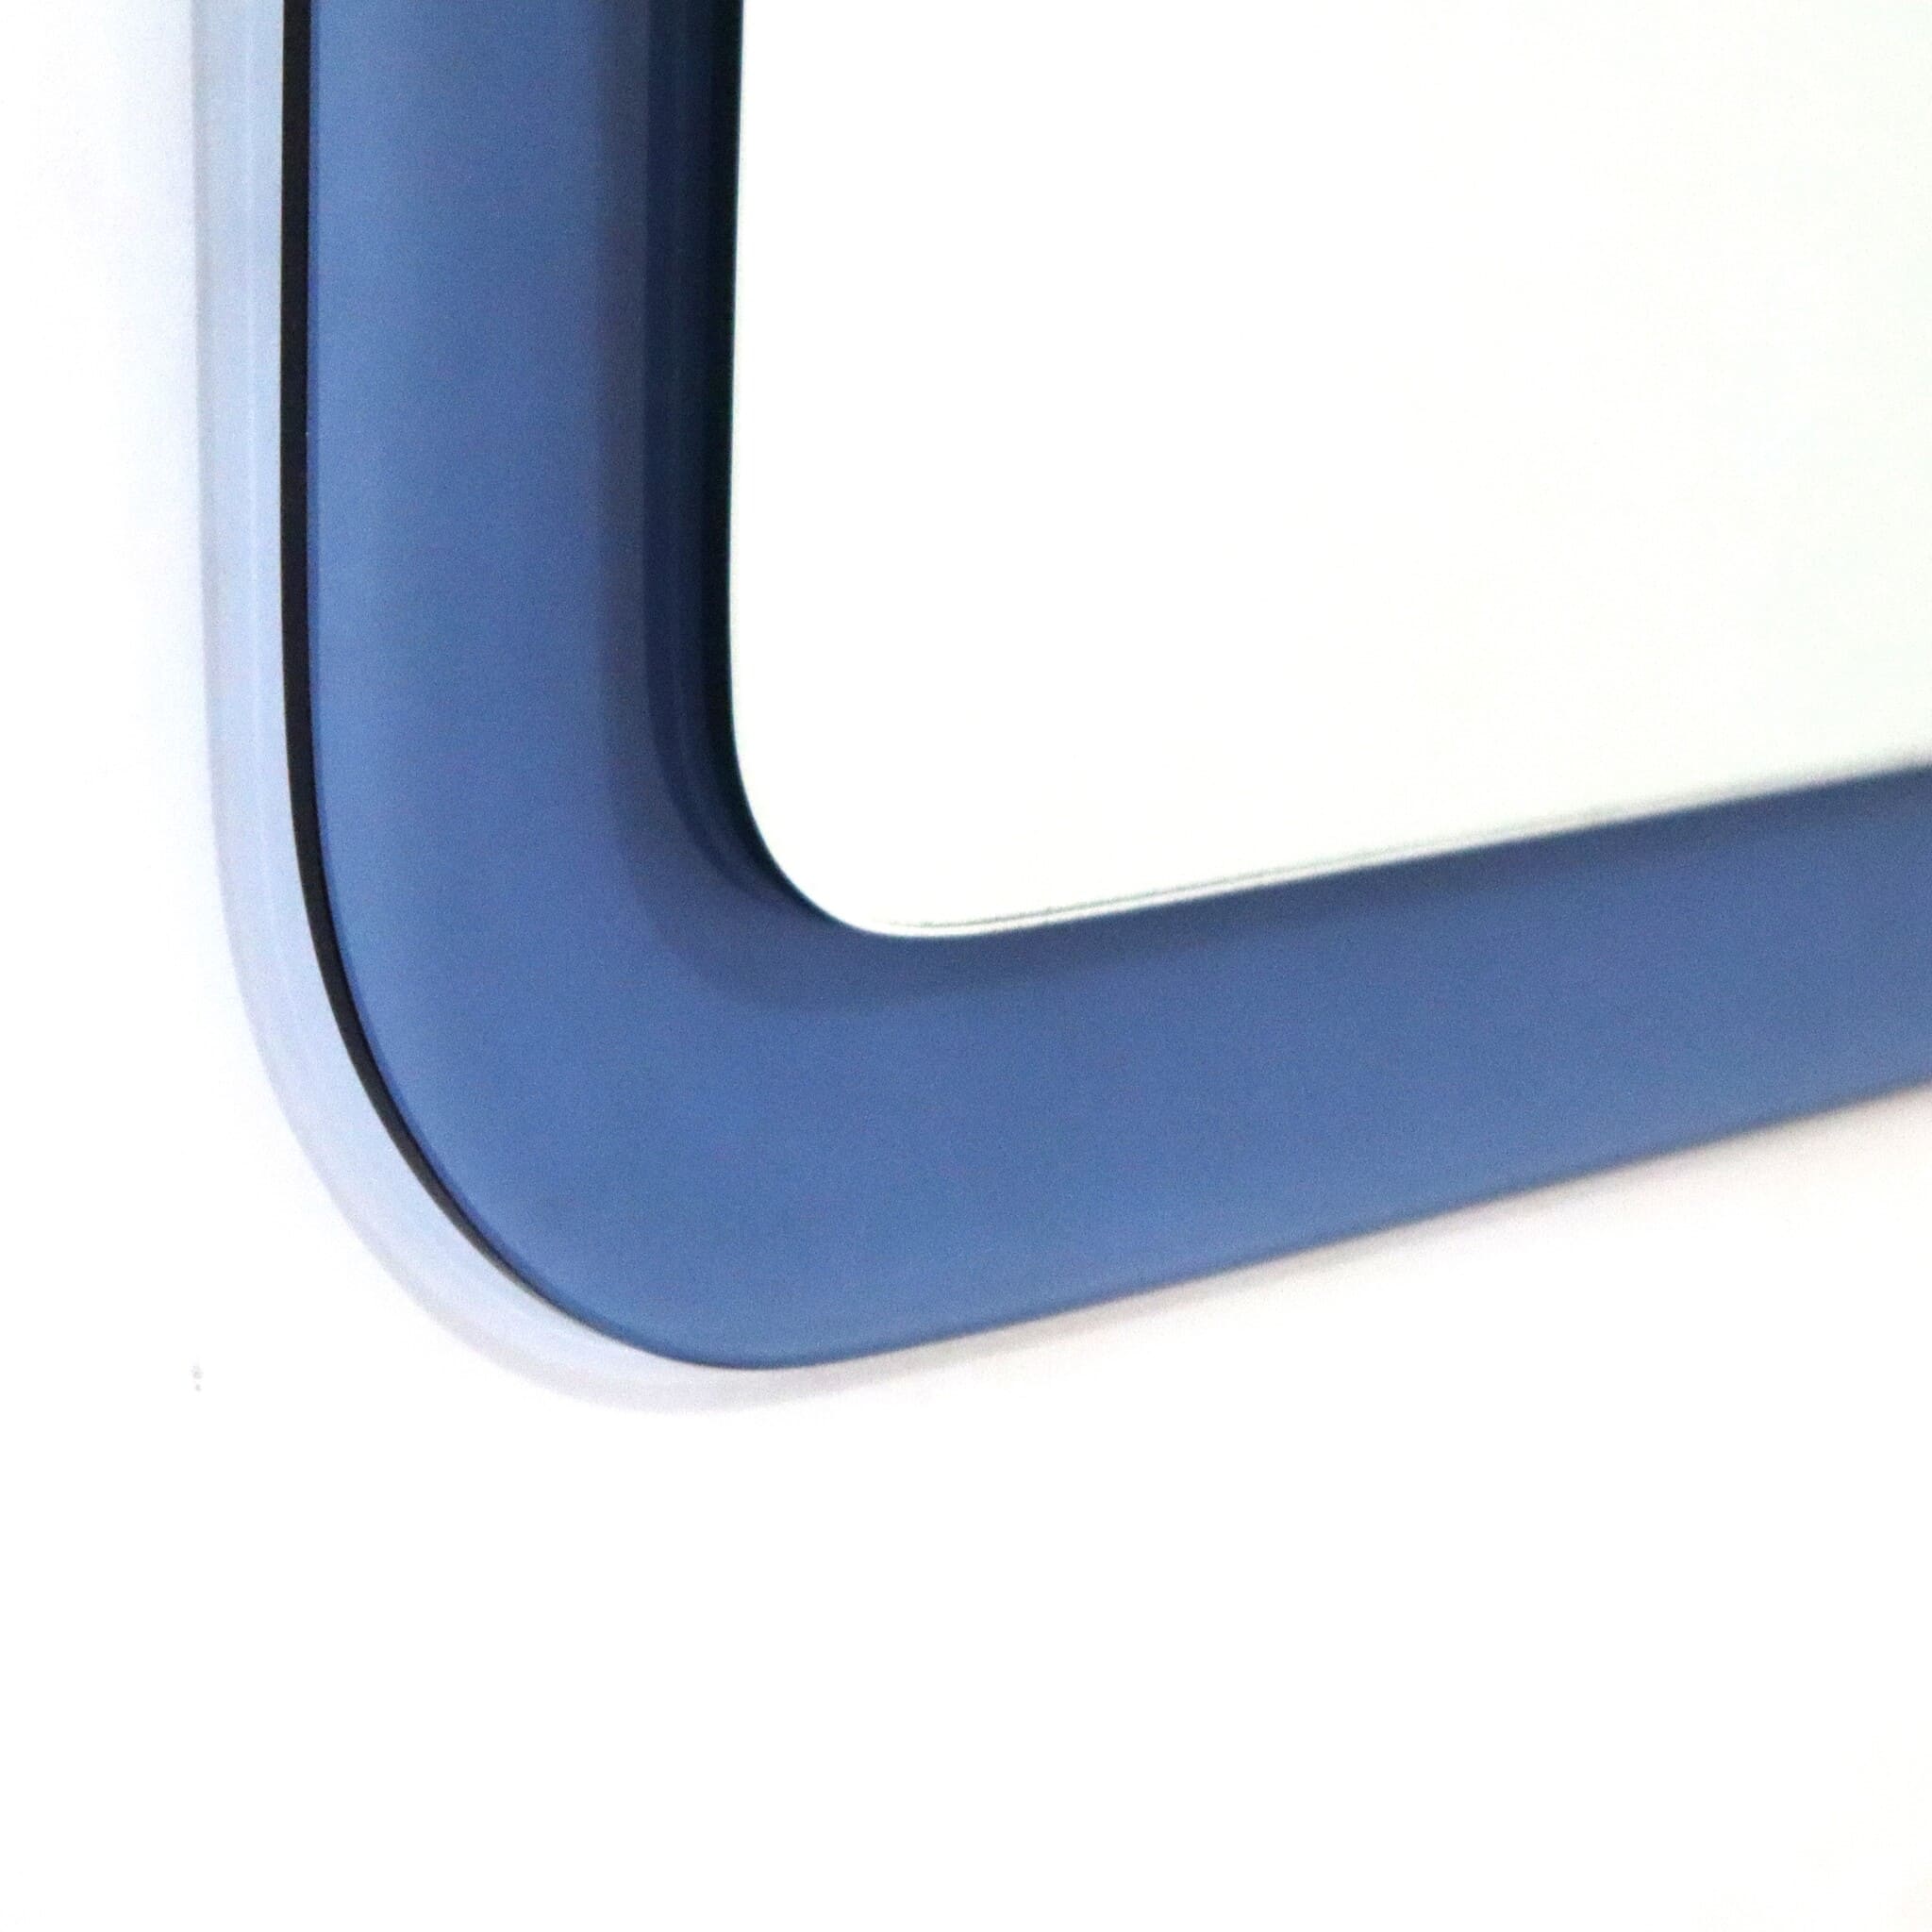 specchio-quadrato-bordi-rotondi-blu-cobalto-anni-70-dettaglio-angolo-sinistro-basso-visionidepoca